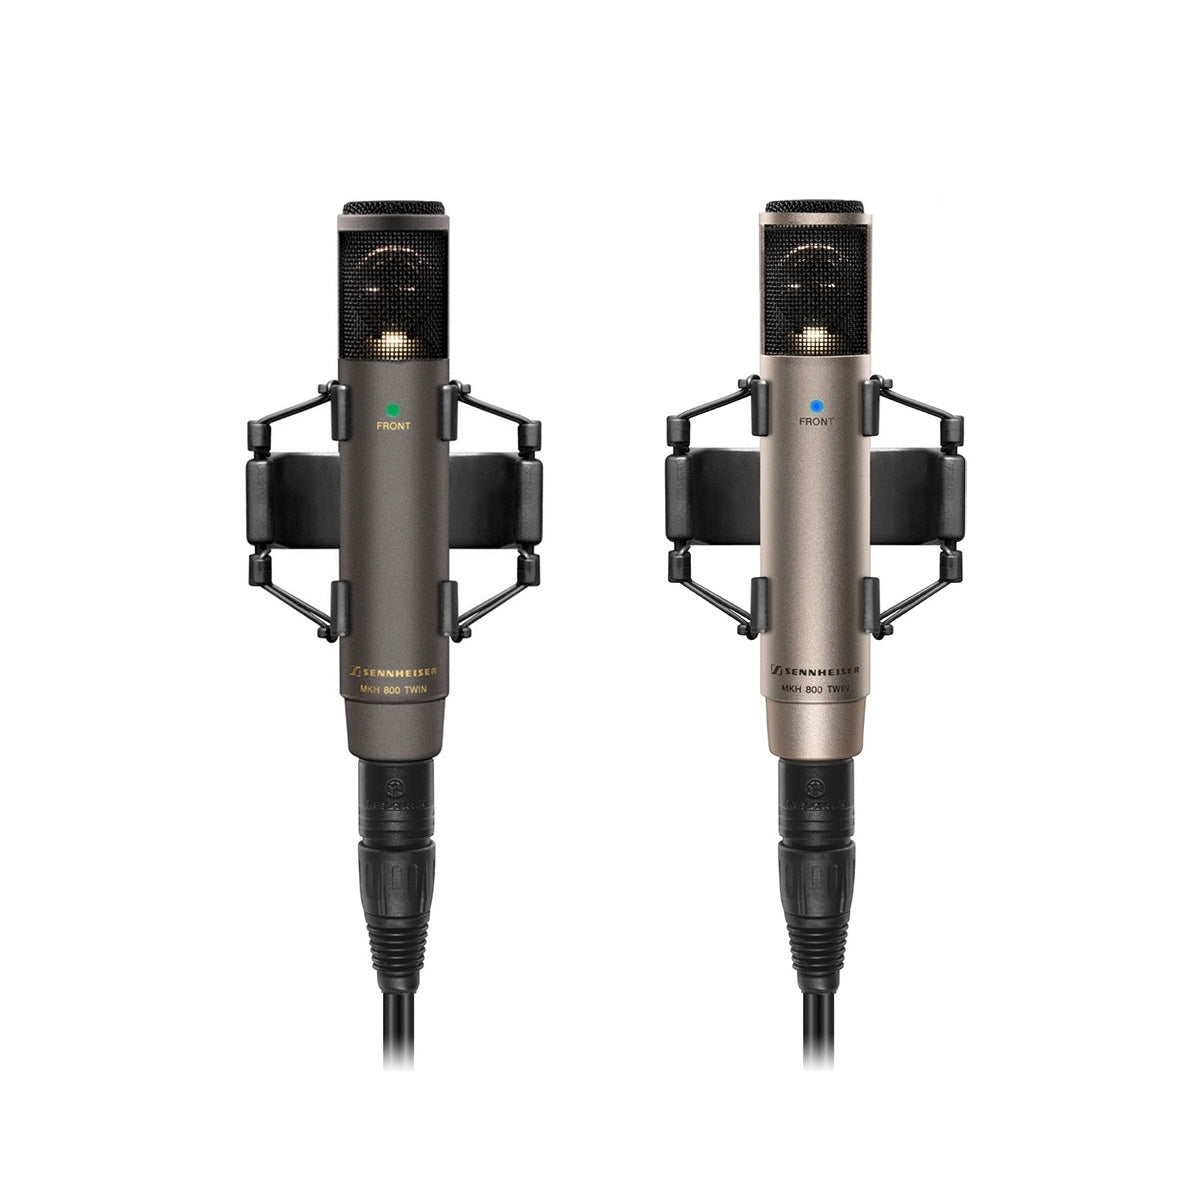 Sennheiser MKH 800 TWIN NX Studio Condenser Microphone, Nextel, Dual Capsule 2x Cardioid, XLR-5M